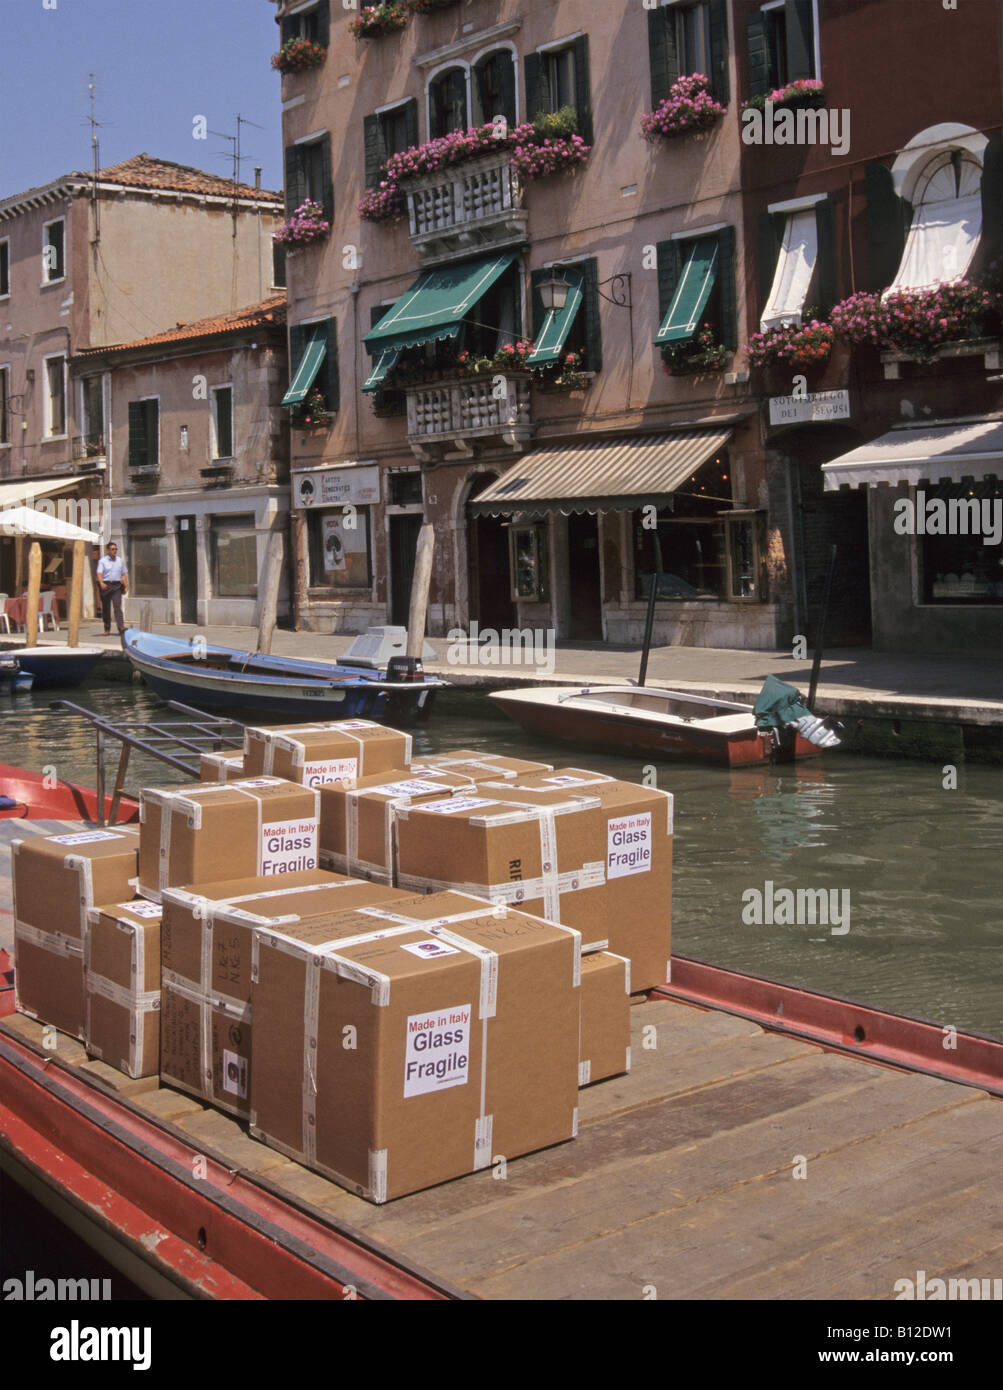 Boîtes de carton contenant des produits en verre sur le bateau amarré au Rio dei Vetrai Canal de l'île de Murano Venise Italie Banque D'Images